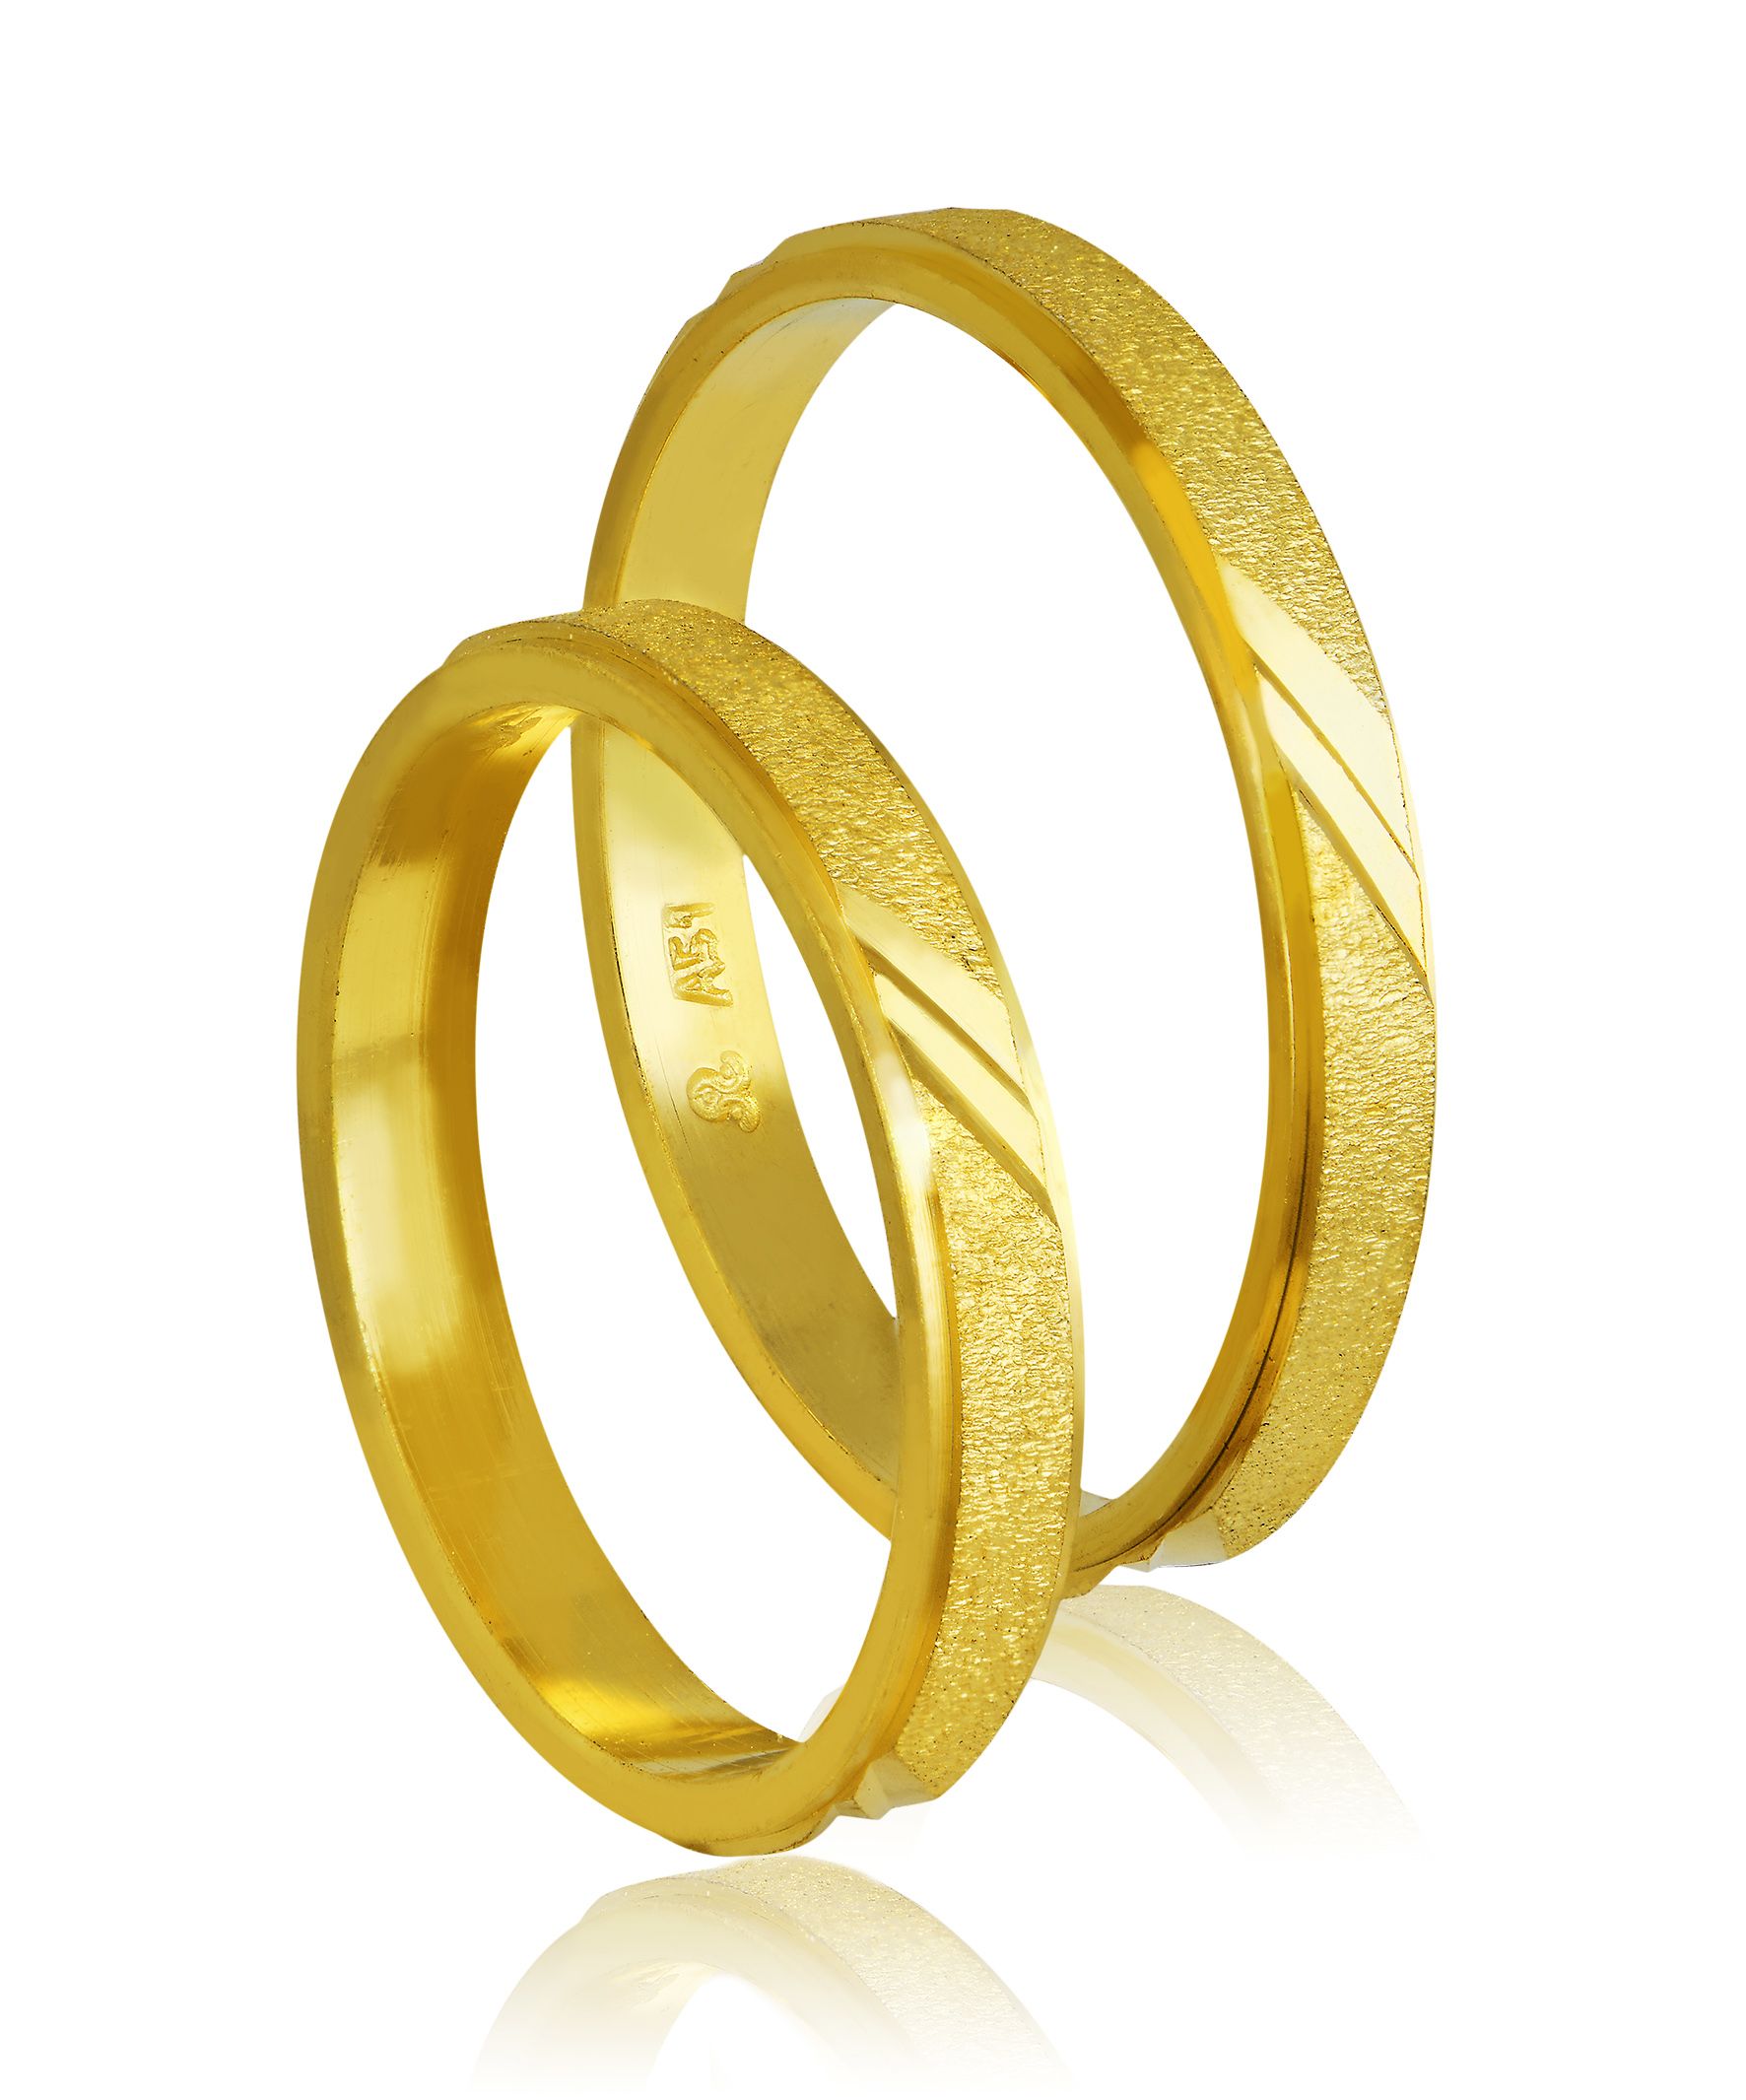 Golden wedding rings 3mm (code 403)